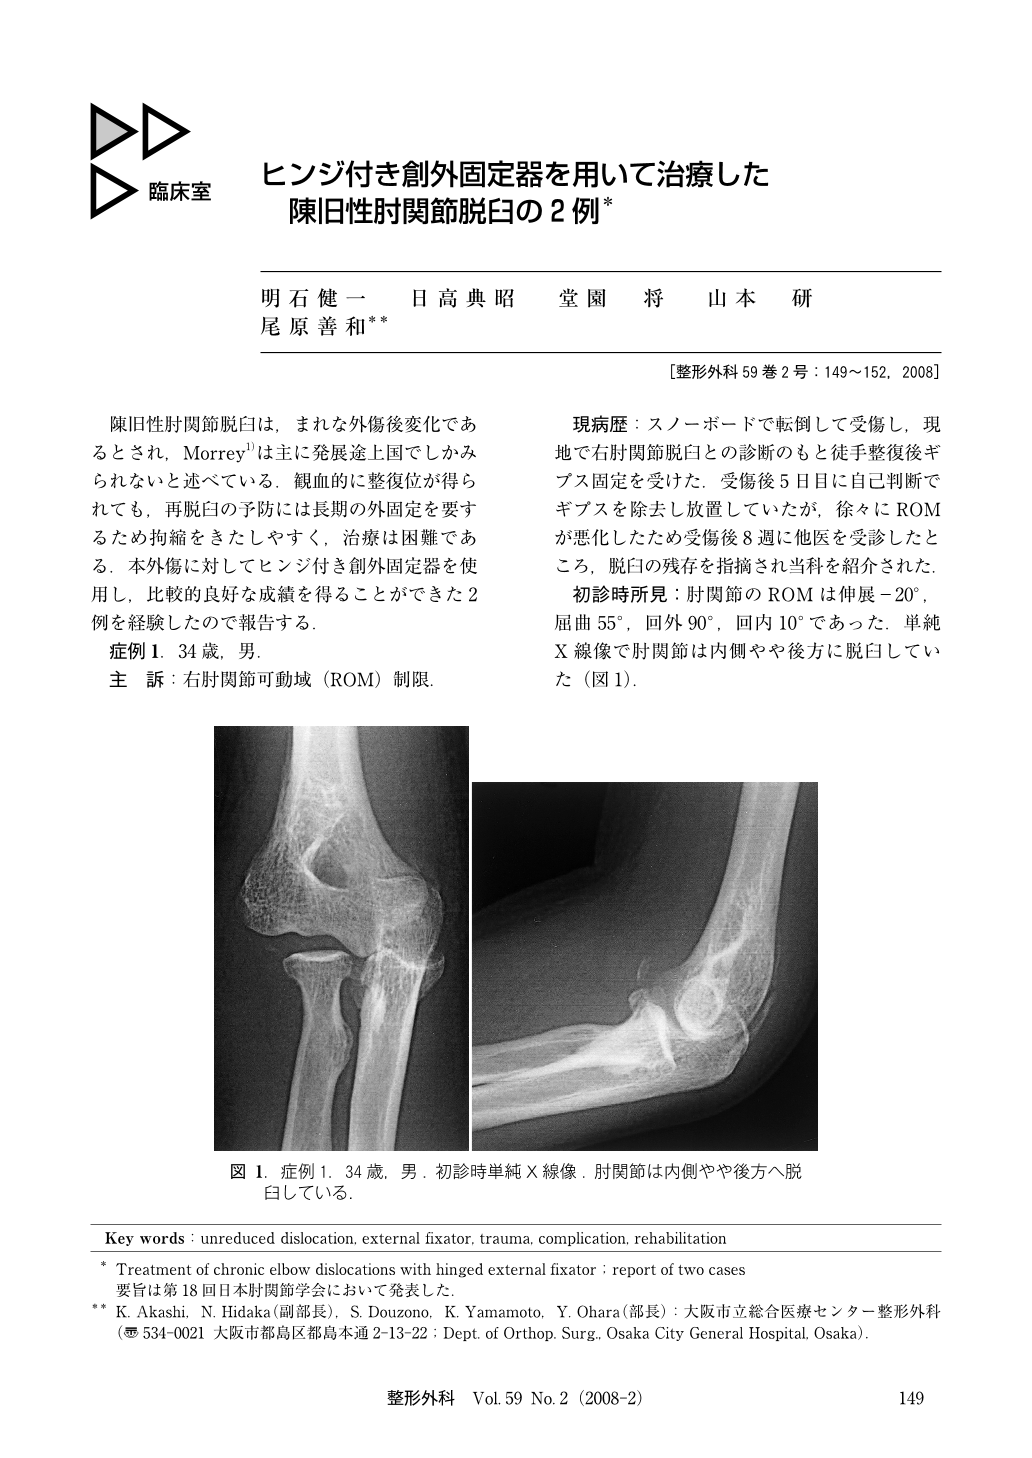 ヒンジ付き創外固定器を用いて治療した陳旧性肘関節脱臼の2例 臨床雑誌整形外科 59巻2号 医書 Jp